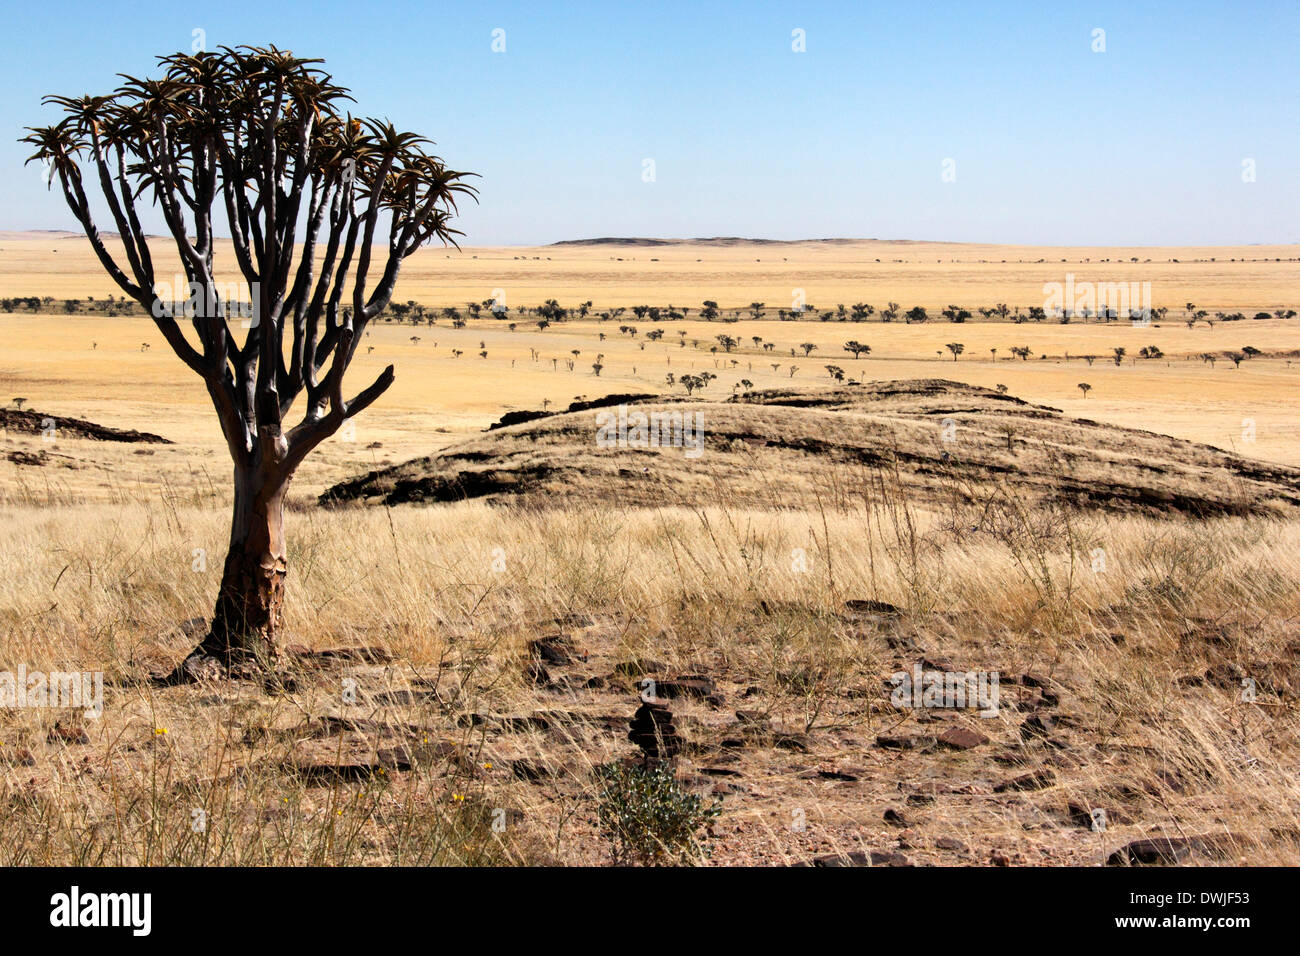 El carcaj árbol en el semi-desierto planos del Namib-Naukluft desierto en Namibia Foto de stock